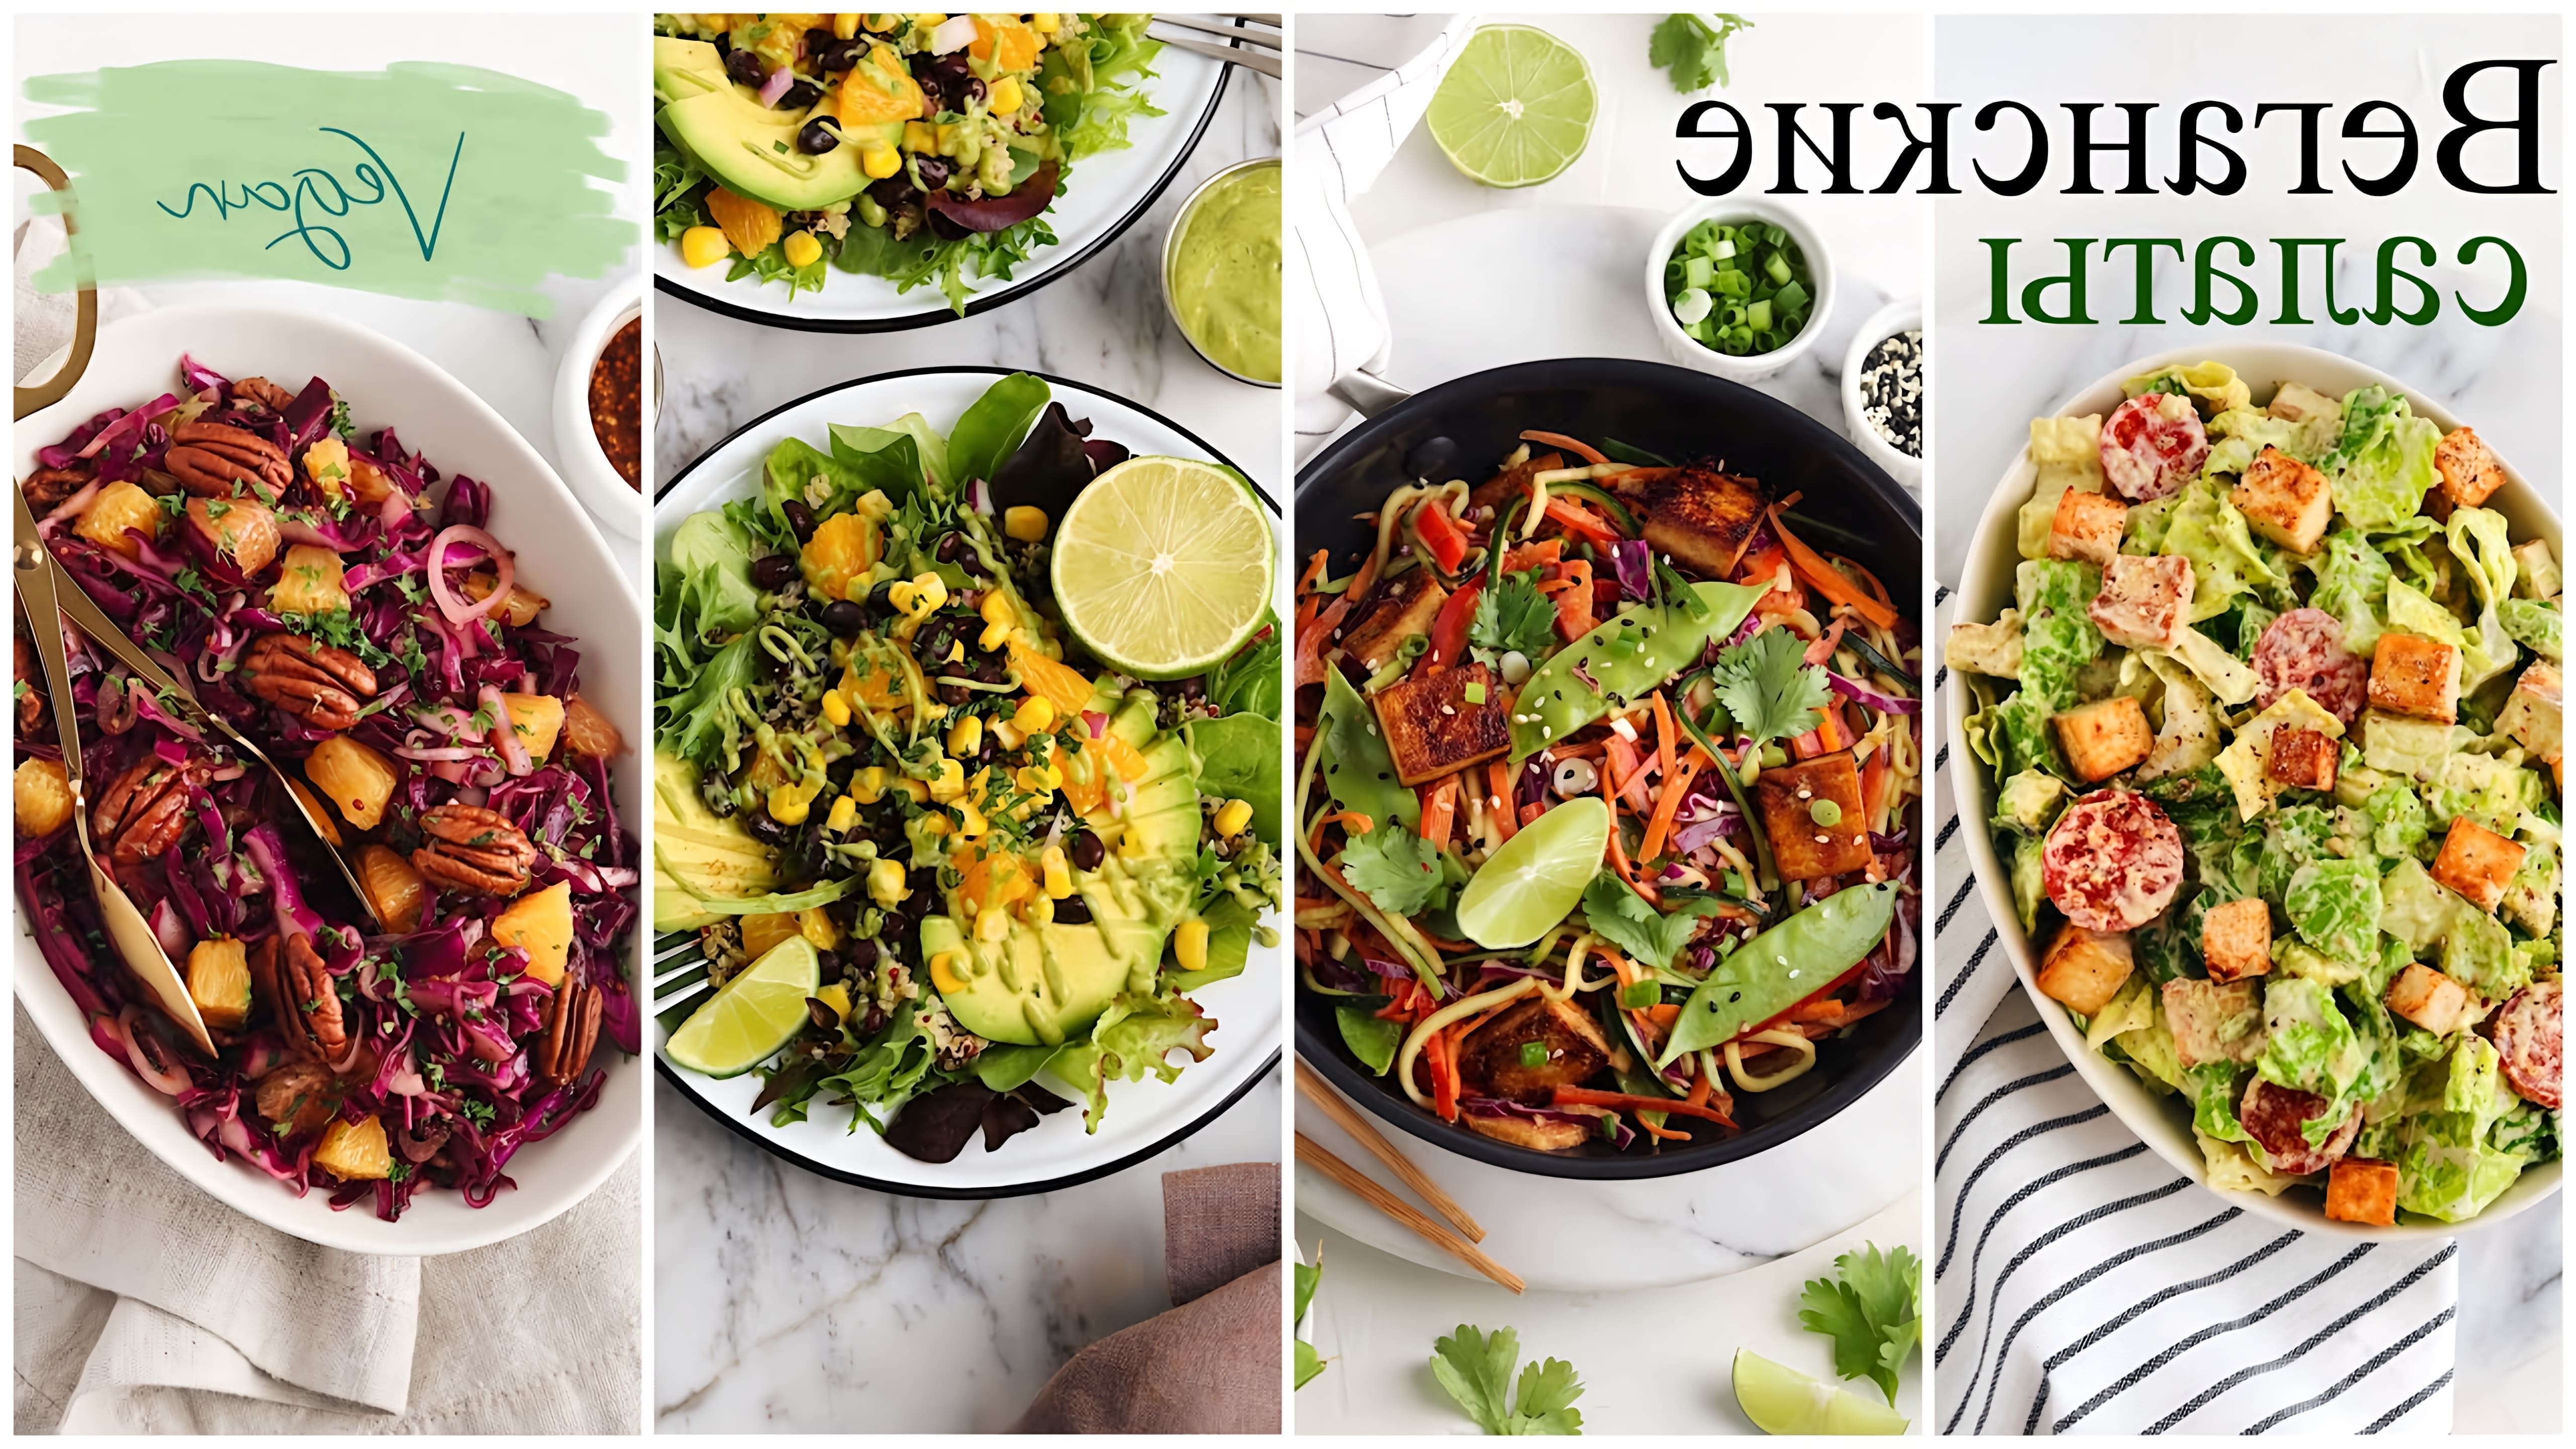 В этом видео Альбина делится рецептами четырех веганских салатов: мексиканского салата киноа, салата из краснокочанной капусты, овощного салата с тофу и веганского салата цезарь